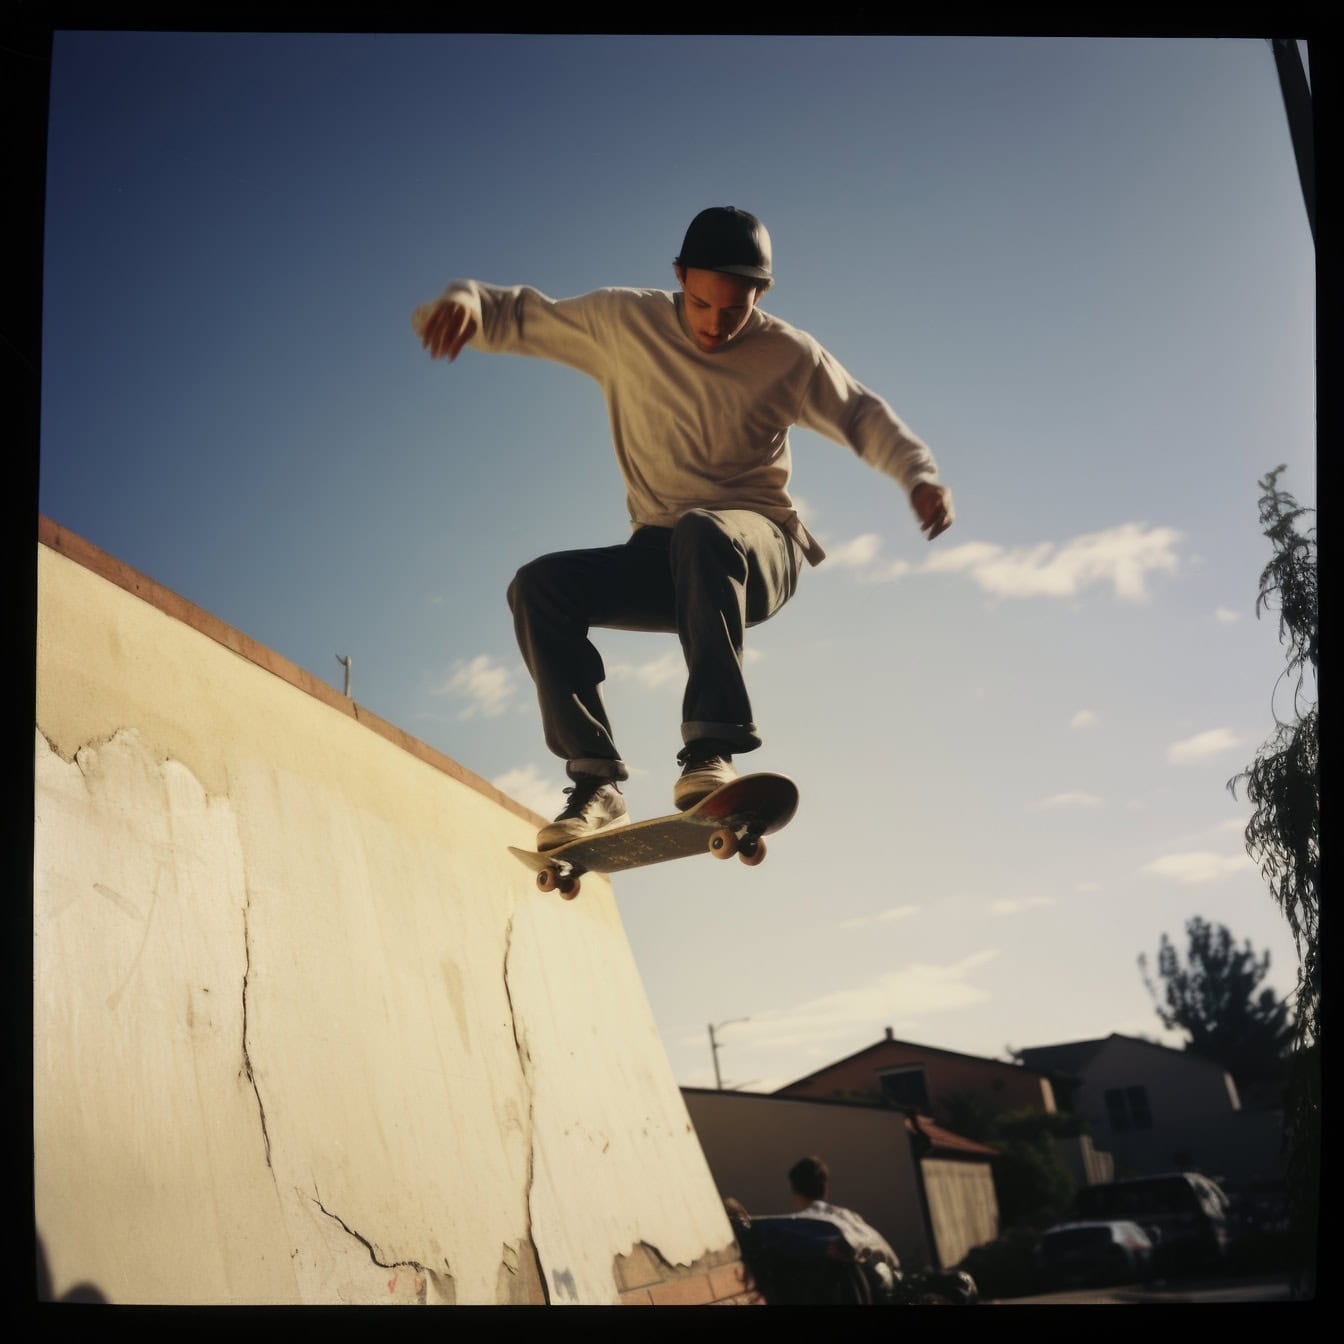 Stará polaroidová fotografia mladého muža, ktorý skáče z rampy na skateboarde ako kaskadér